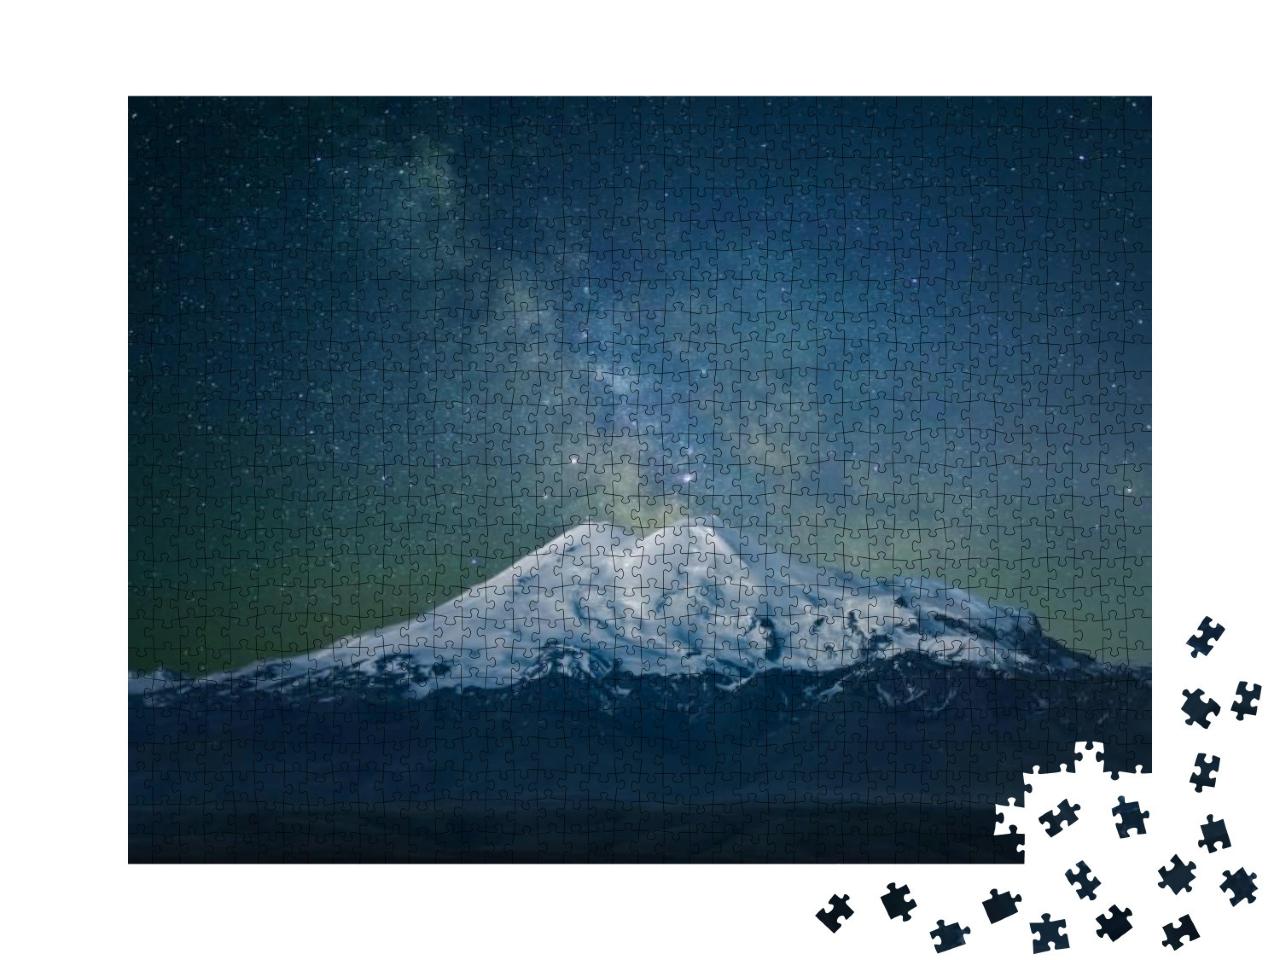 Puzzle 1000 Teile „Berg Elbrus und die Milchstraße“